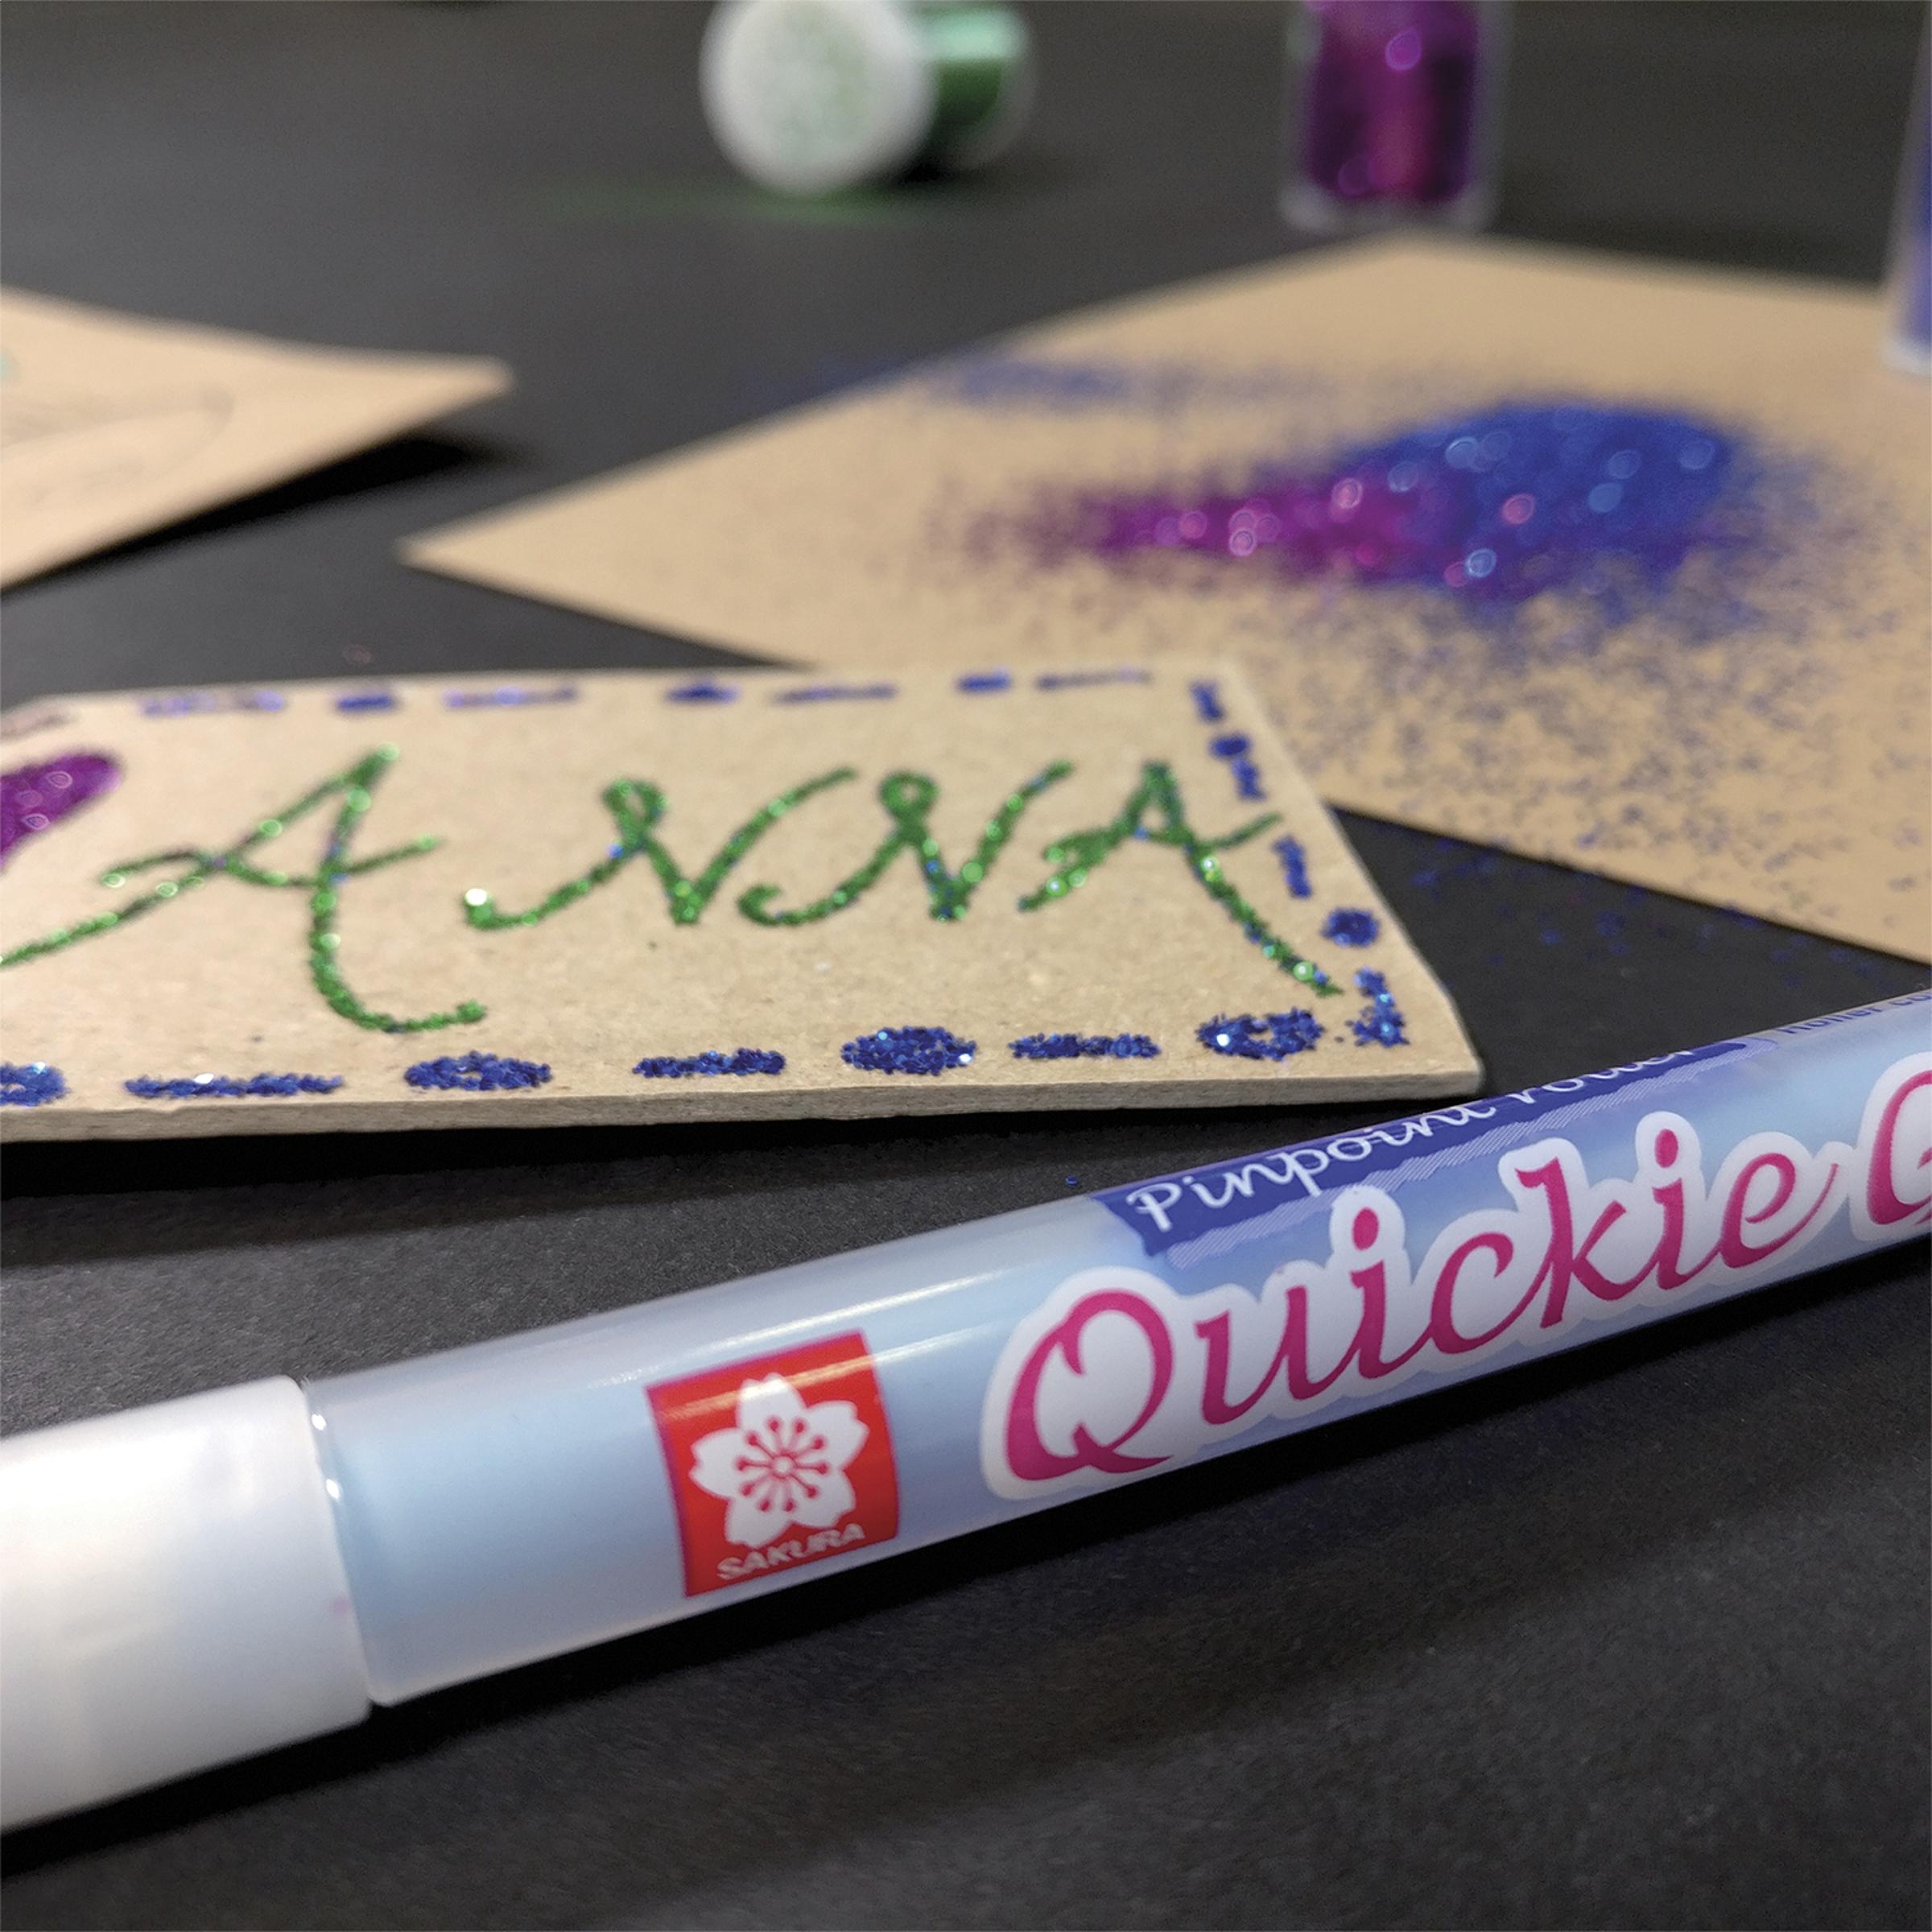 Sakura Quickie Glue stylo colle, étui de 3 pièces sur